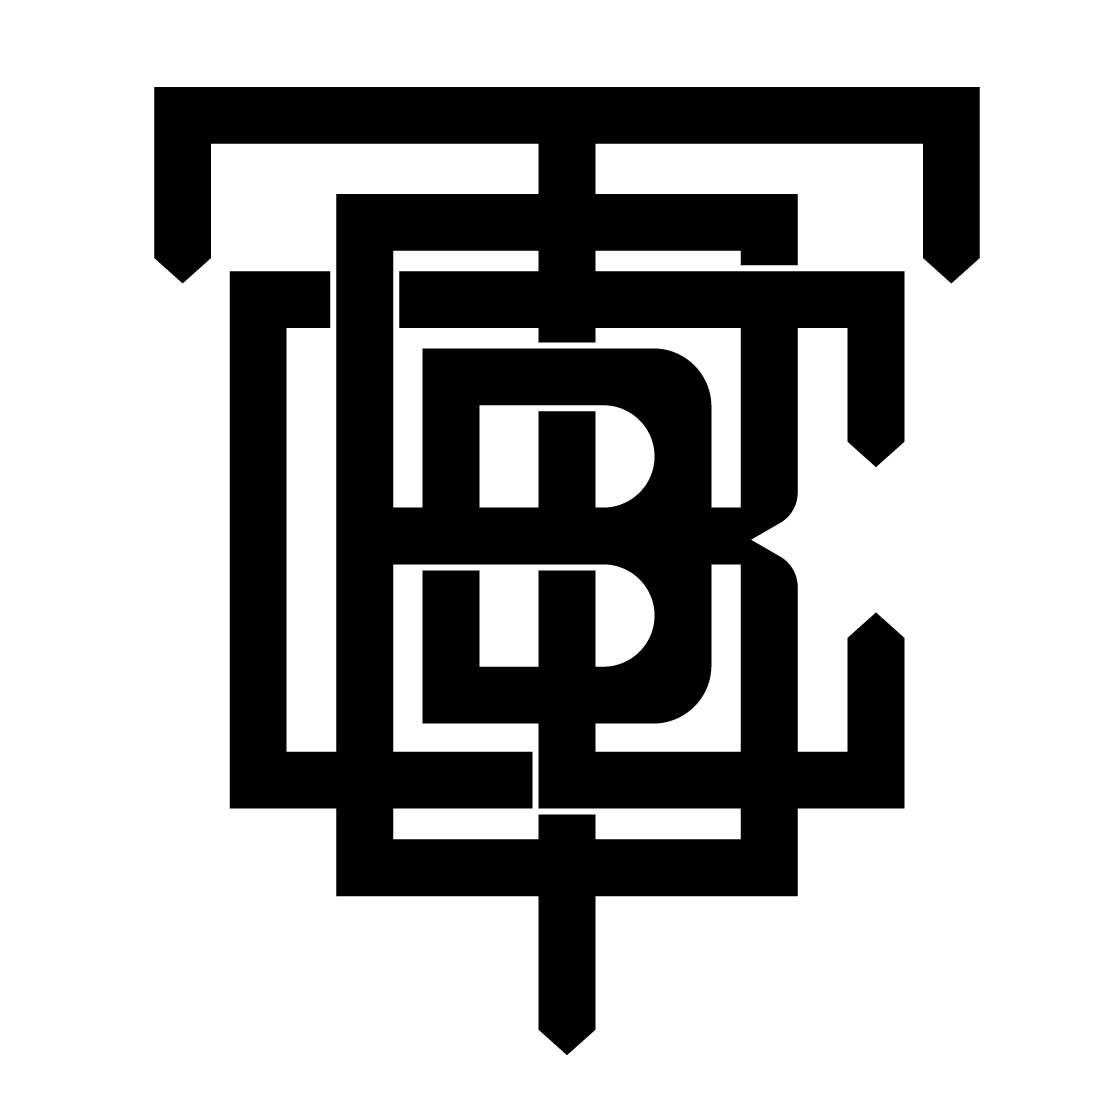 TBBC Monogram logo design cover image.